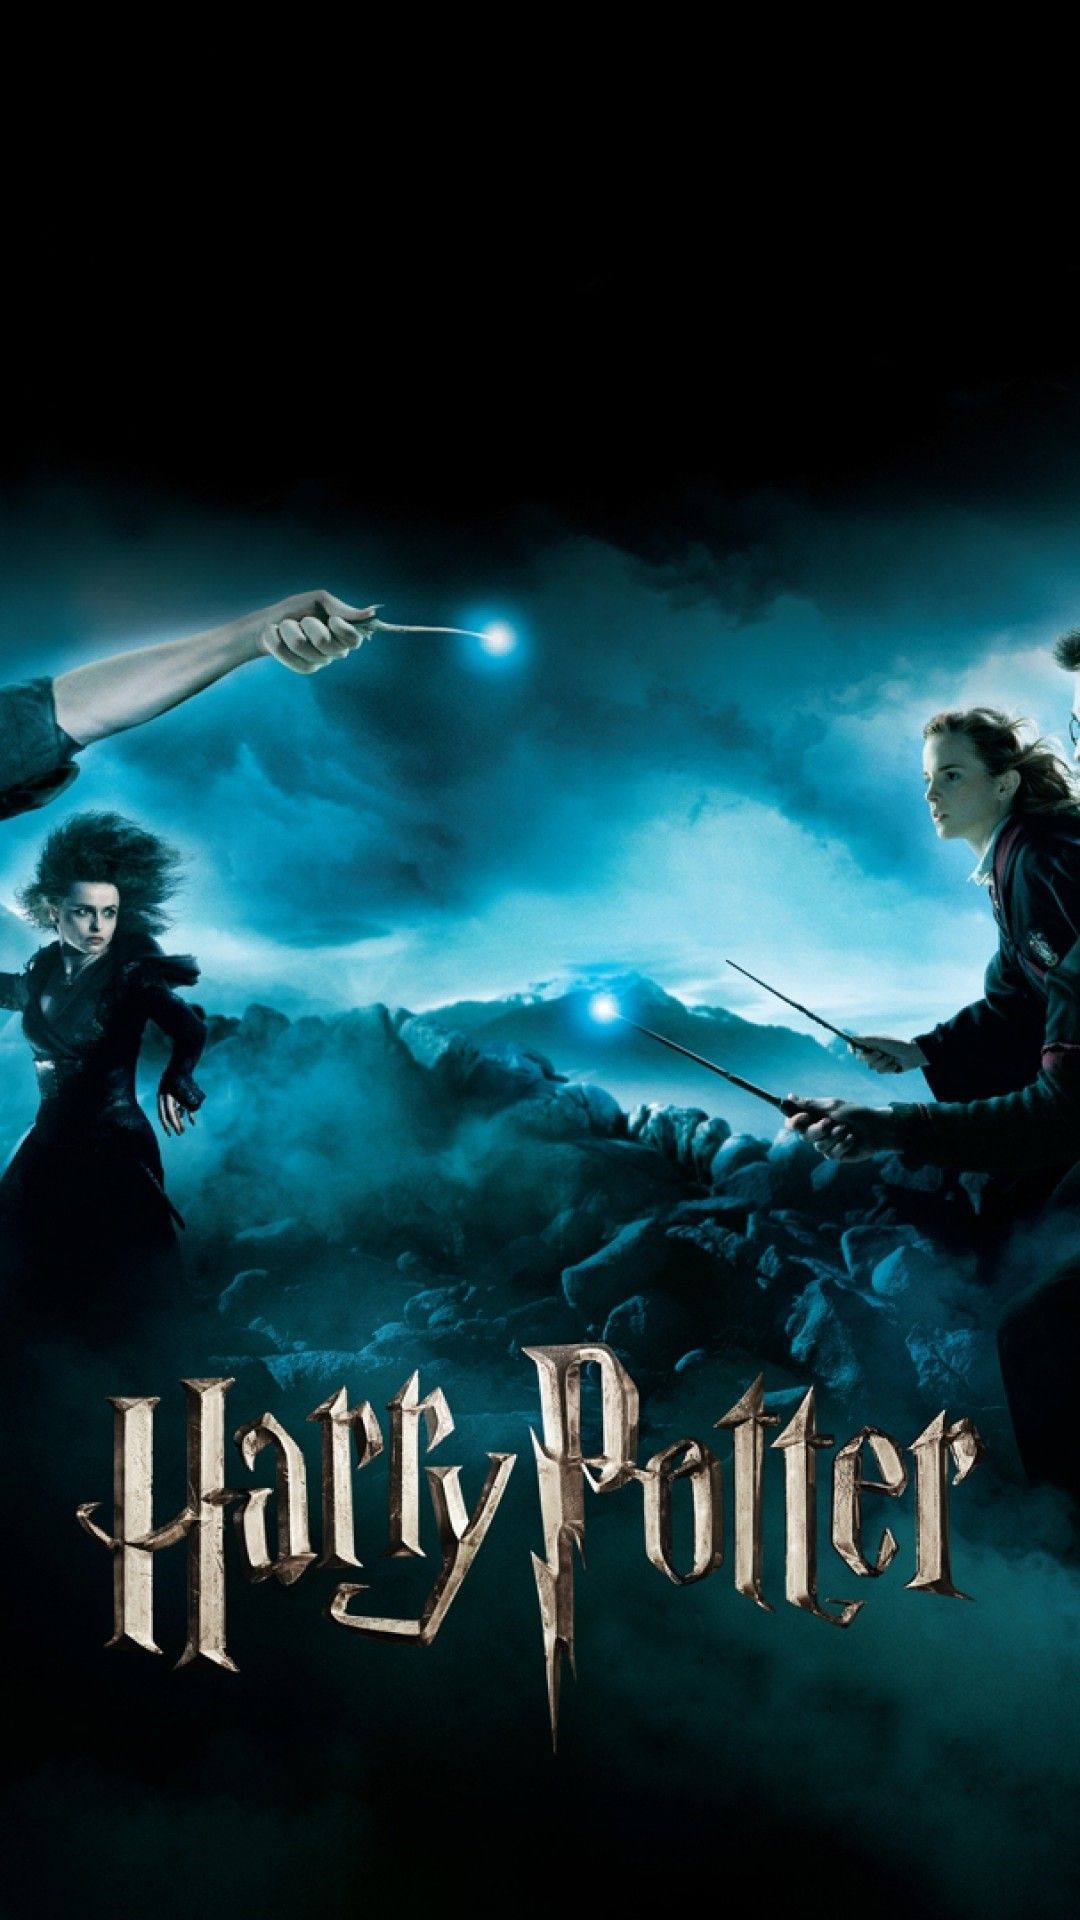 Tải 999 mẫu Wallpaper PC Harry Potter Chất lượng cao, độ phân giải Full HD